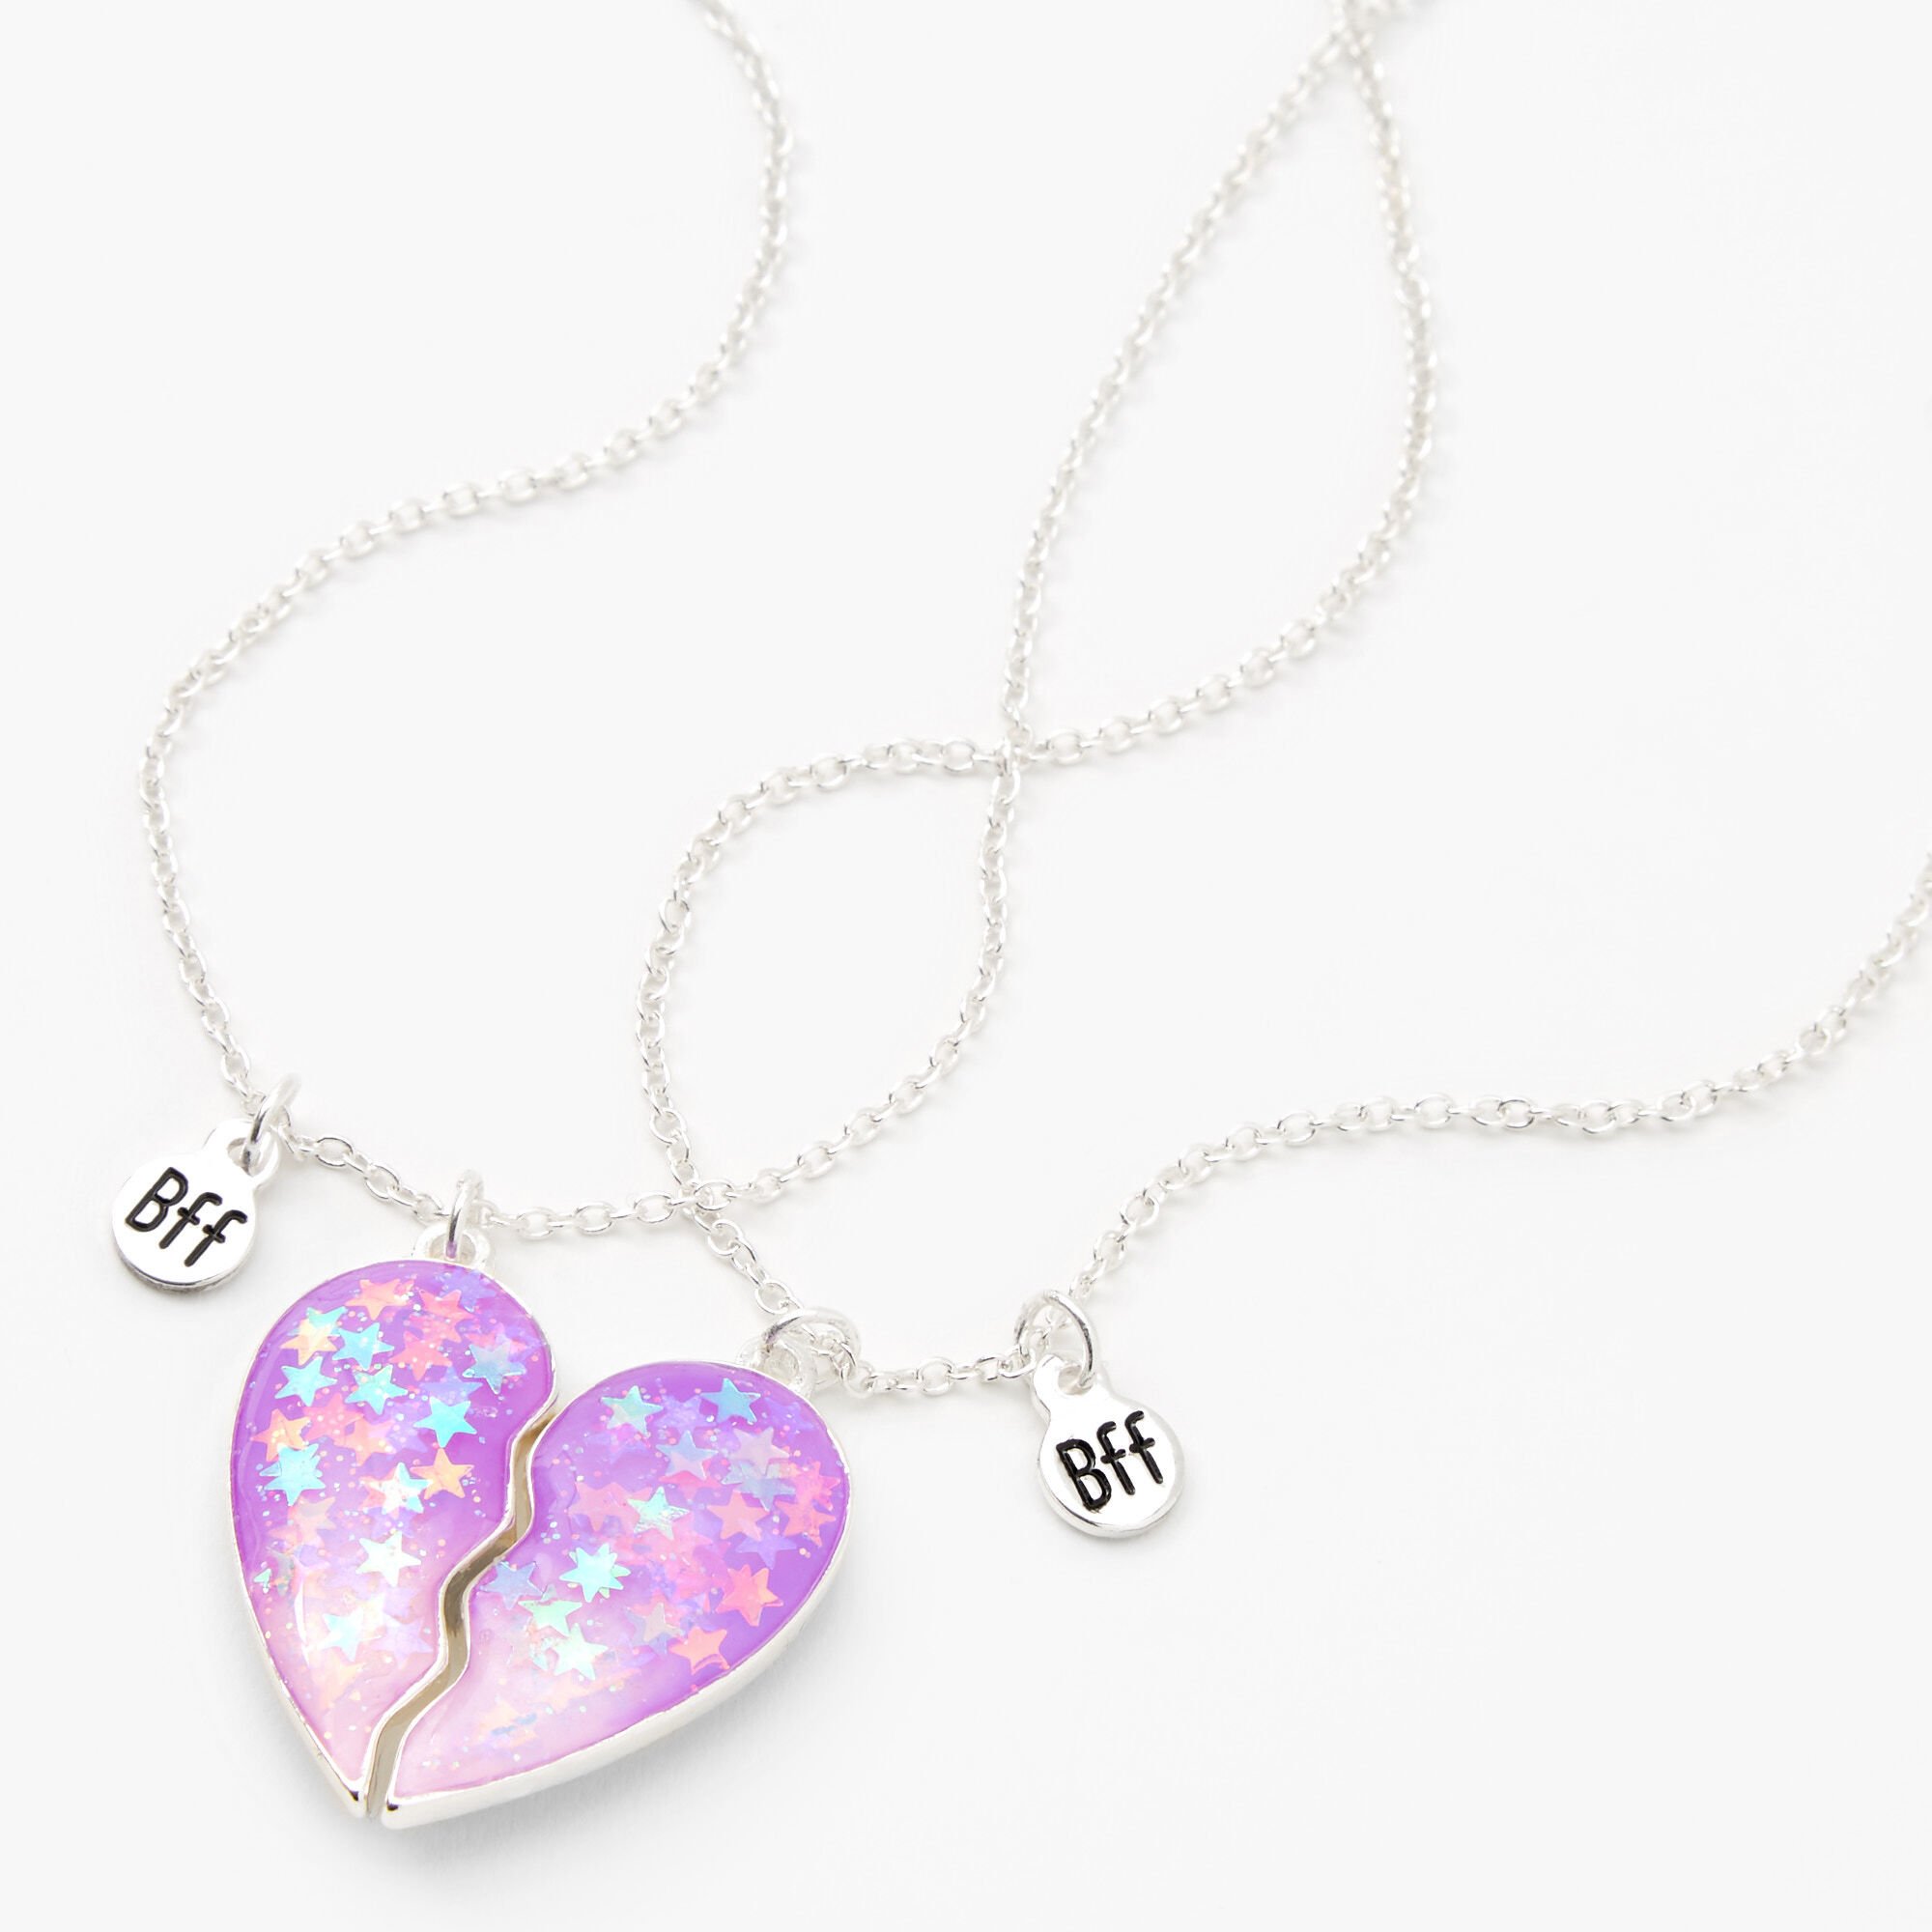 View Claires Best Friends Confetti Stars Split Heart Pendant Necklaces 2 Pack Purple information